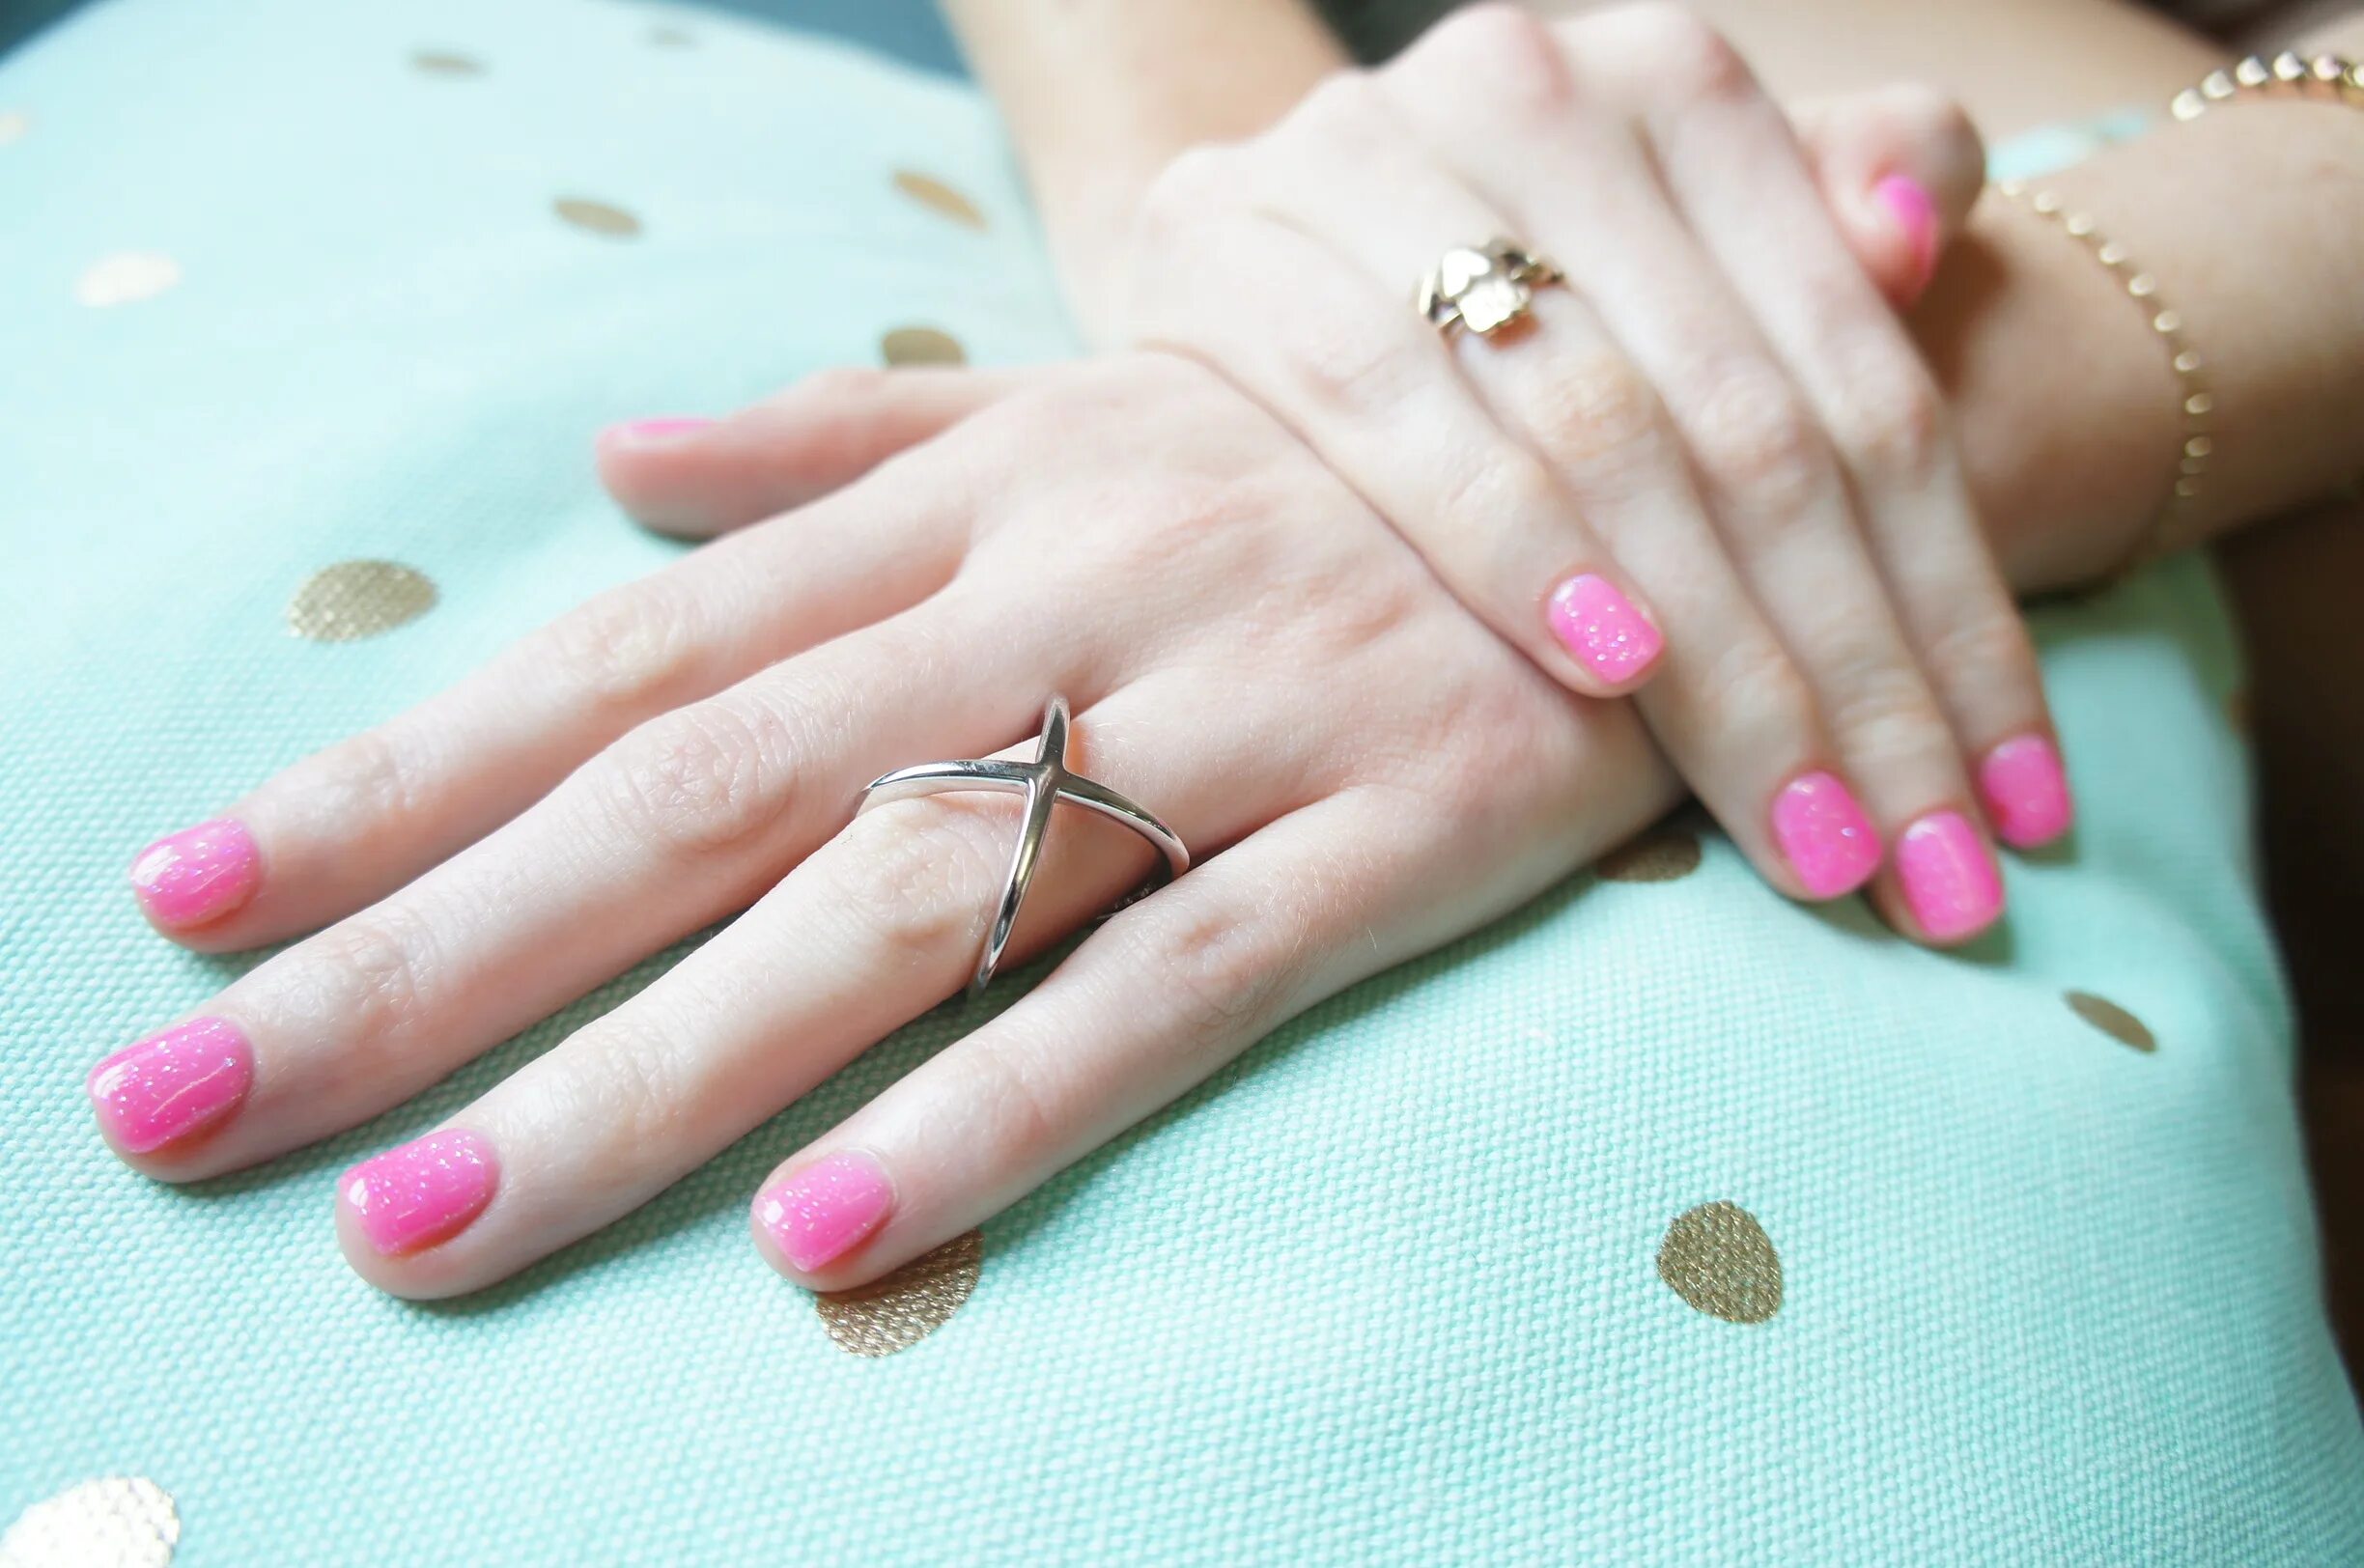 Розовый ногти на руках. Красивые ногти на руках. Женский маникюр. Красивые руки с маникюром. Красивый маникюр для женщин.